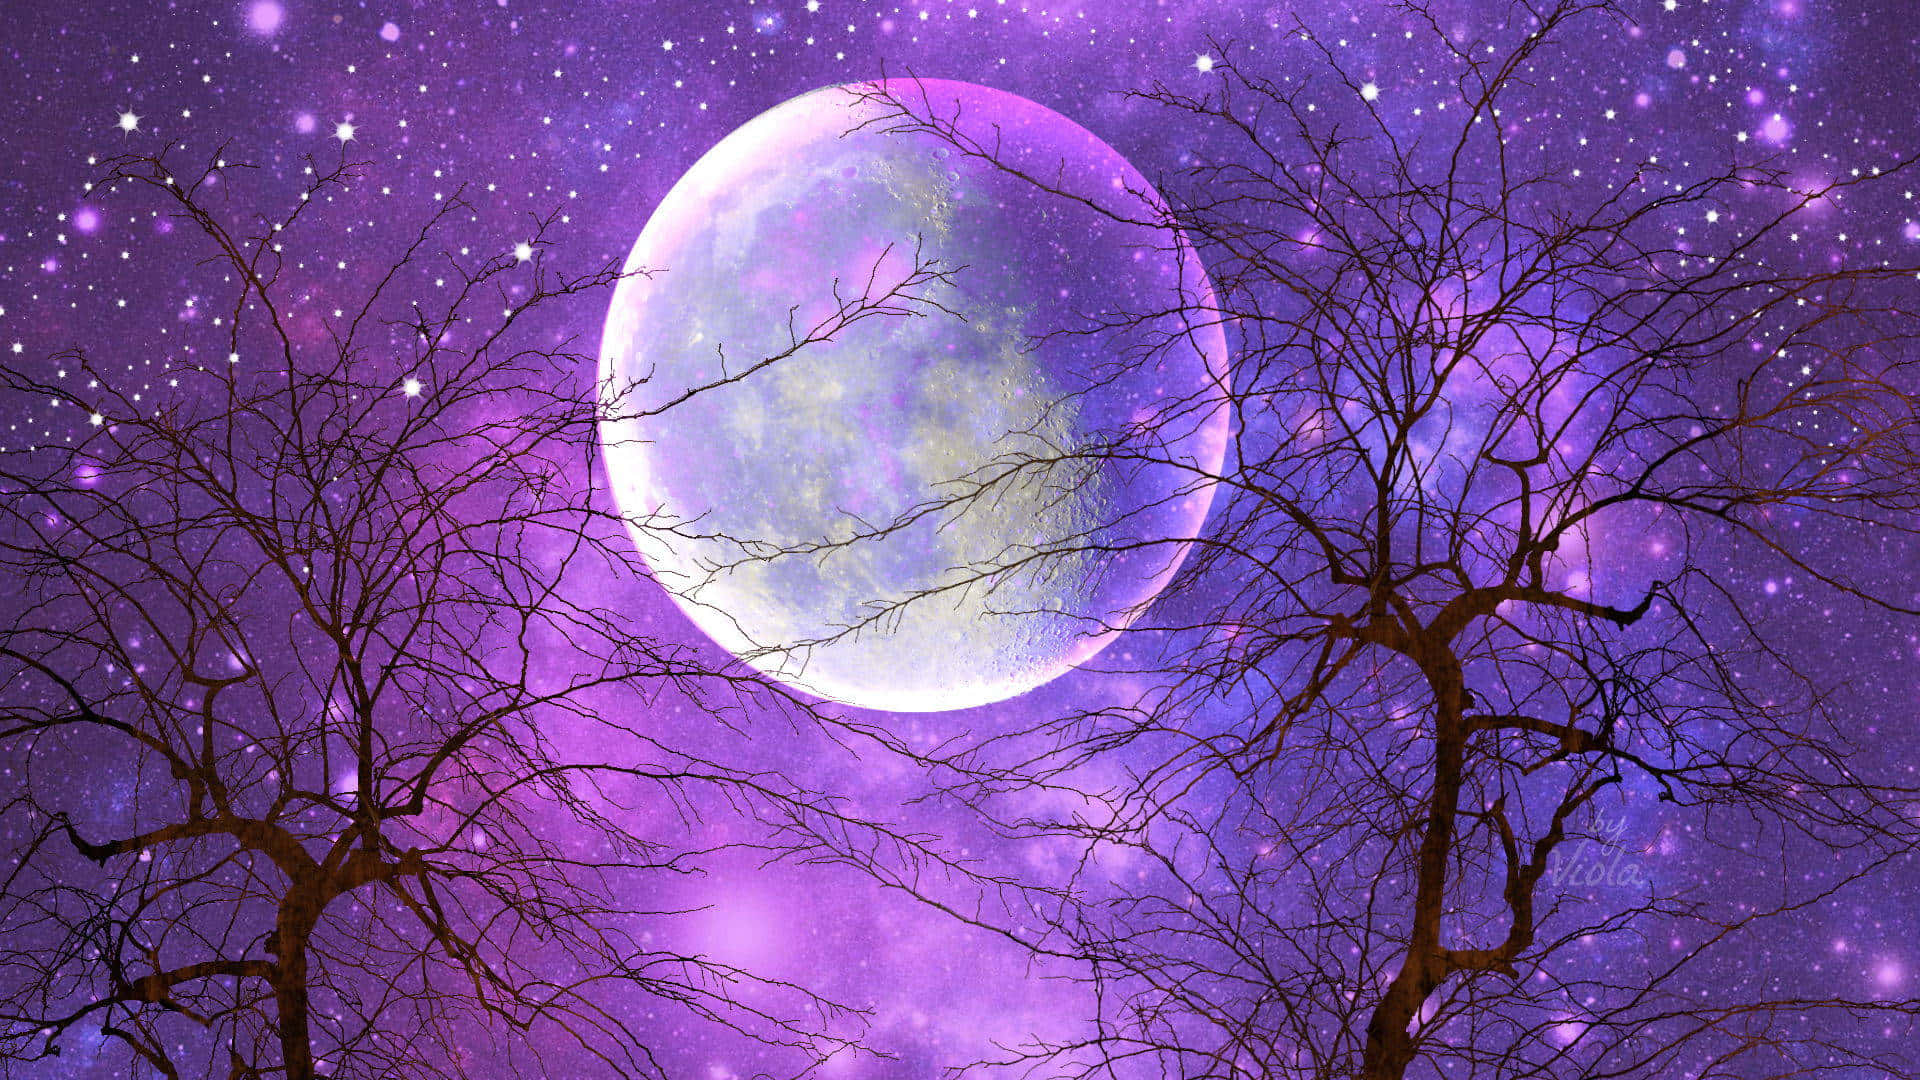 Cielonocturno Estrellado Morado Con Luna Fondo de pantalla